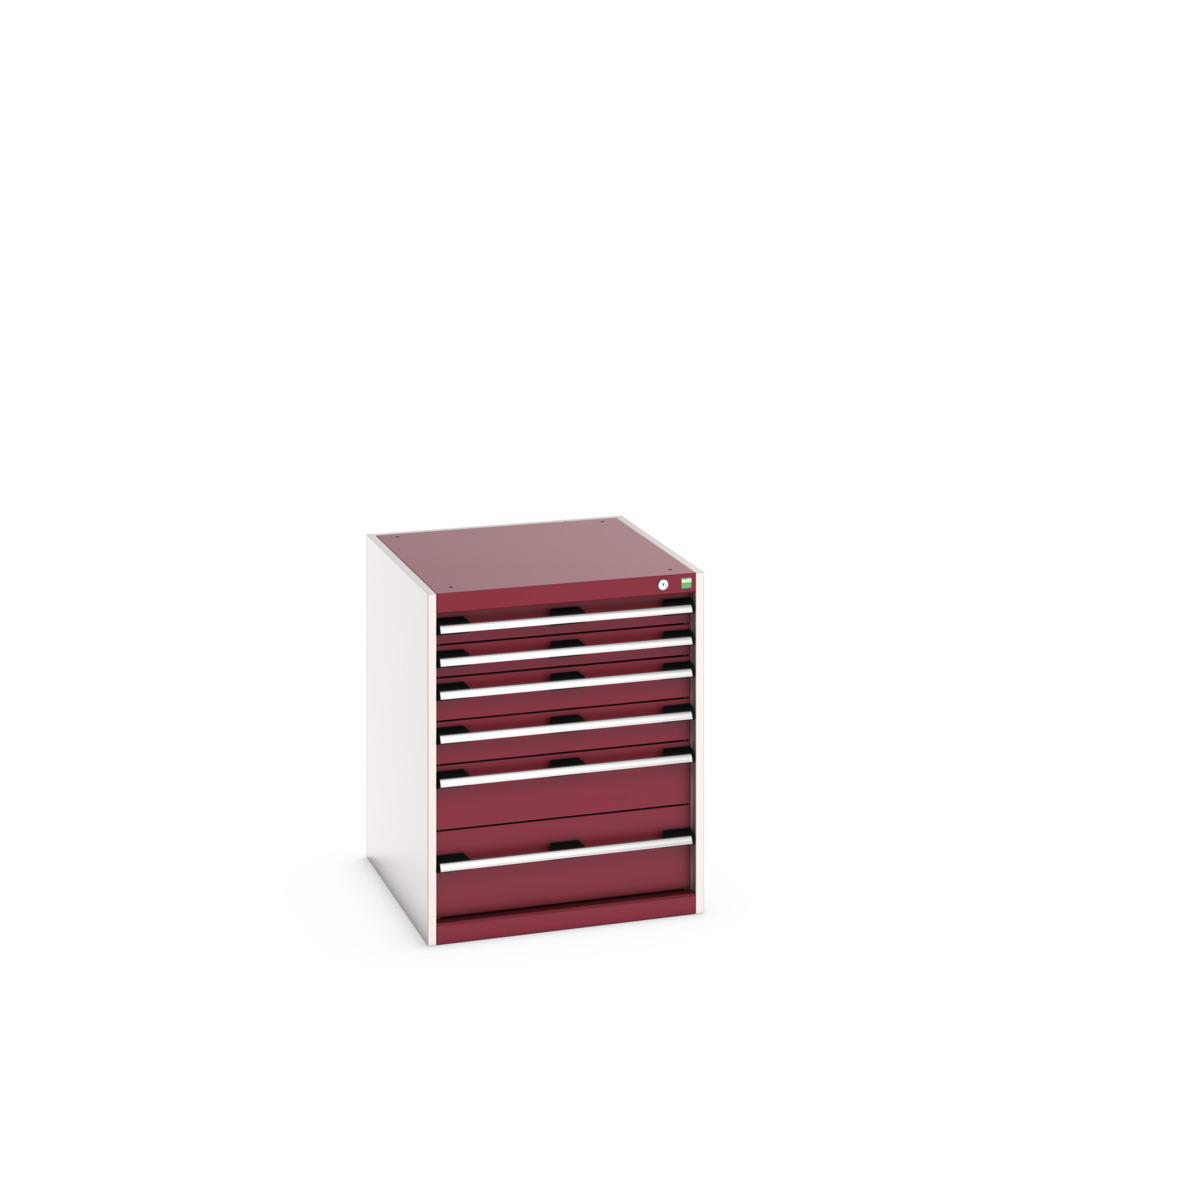 40027019.24V - cubio drawer cabinet